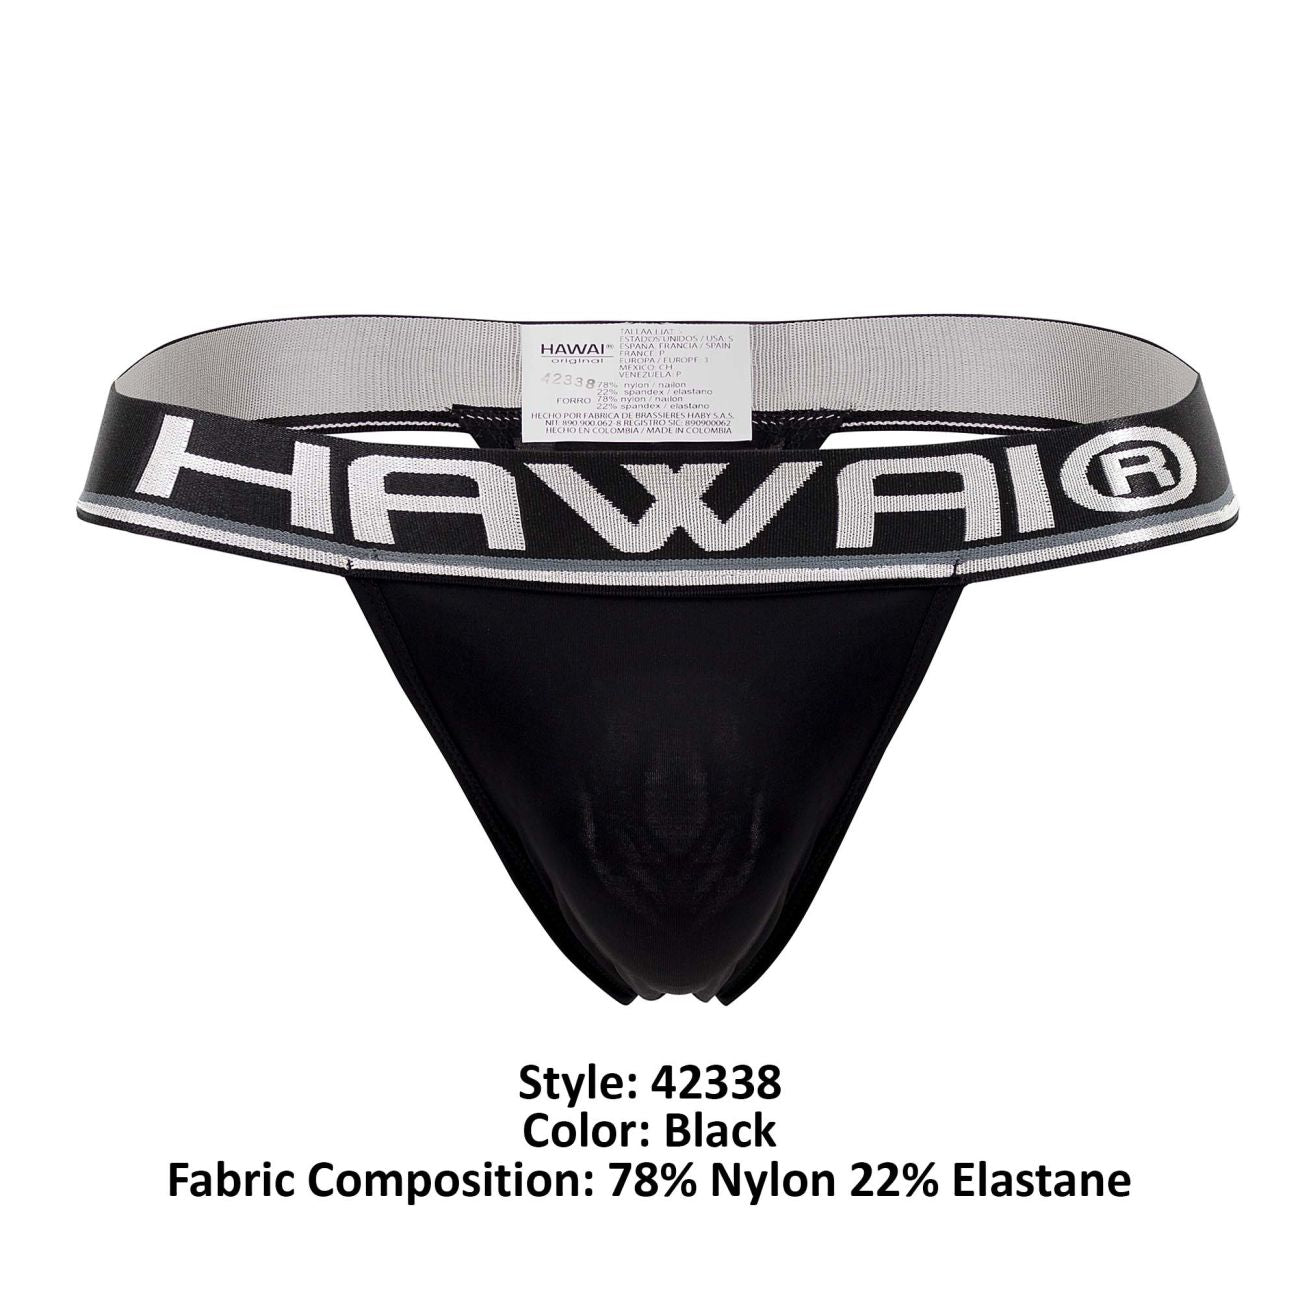 HAWAI 42338 Microfiber Thongs Black